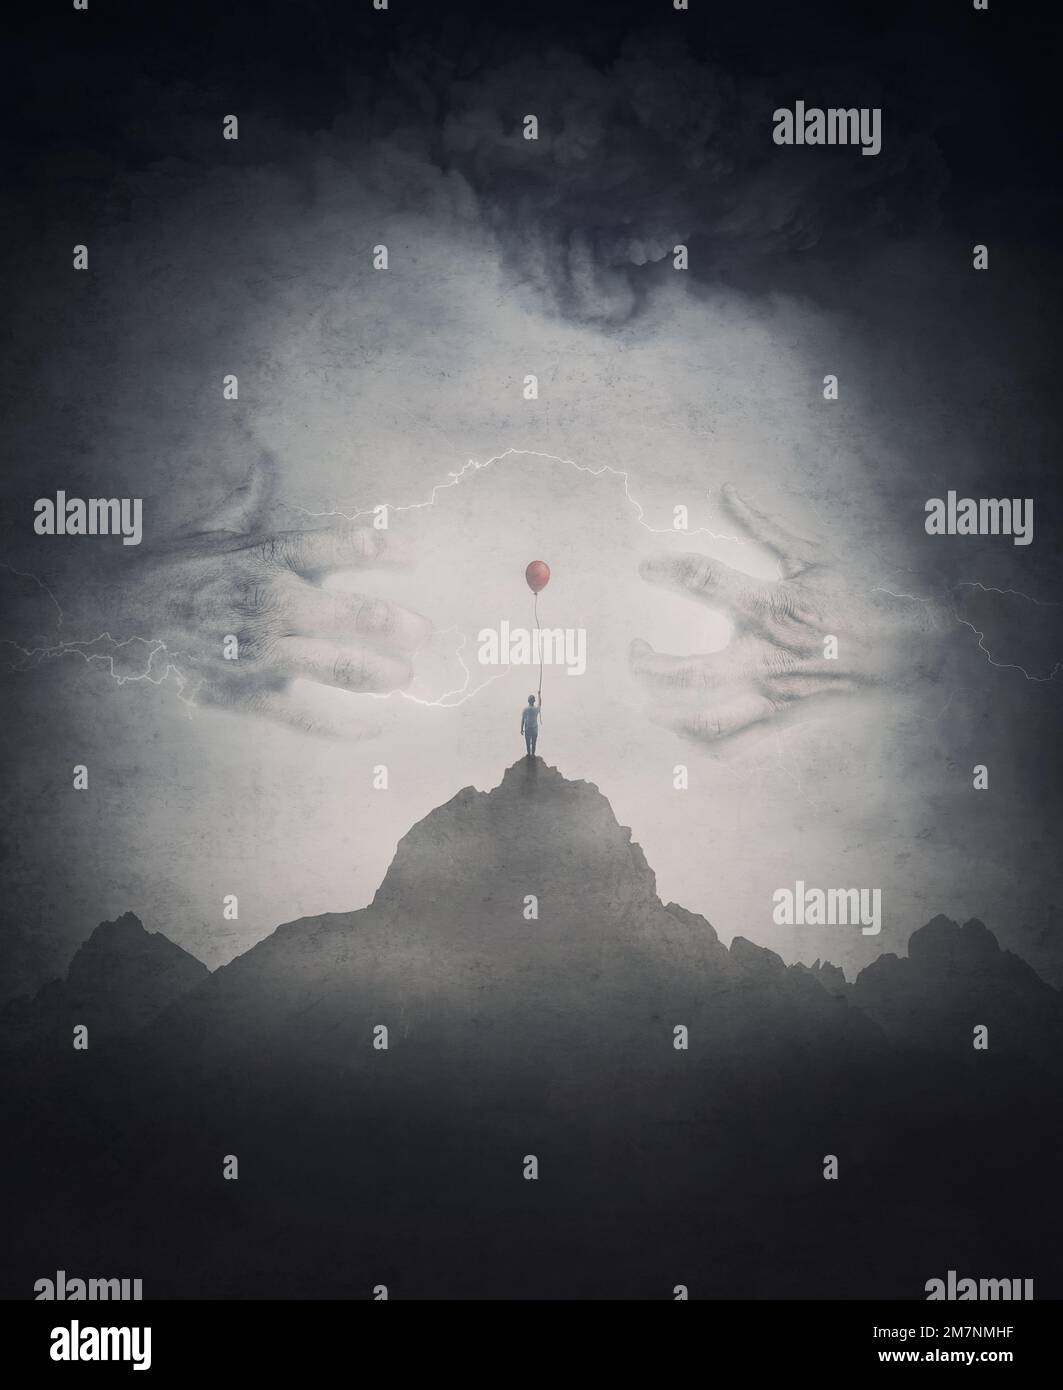 Scena spettrale con un ragazzo solitario che tiene un pallone rosso sulla cima di una montagna di fronte a una misteriosa creatura con mani spaventose giganti che escono dalla nebbia. Ventola Foto Stock